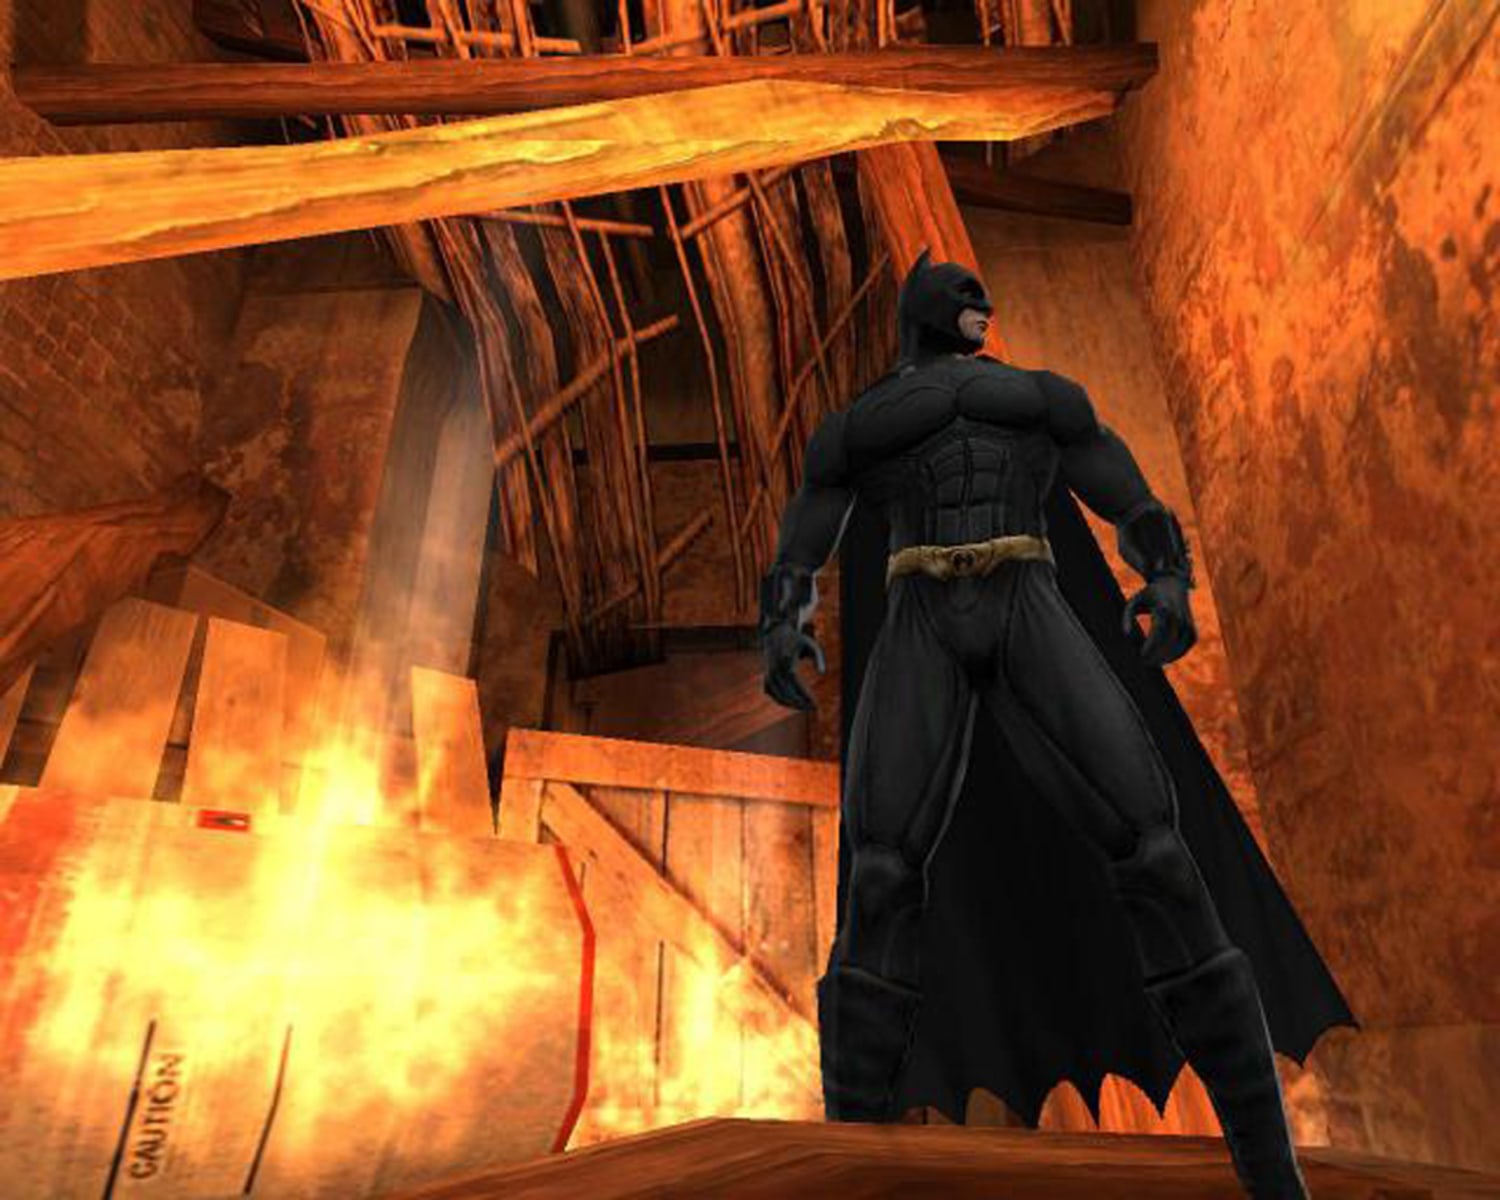 Batman ps2. Batman begins (игра). Batman begins ps2. Batman 2005 игра. Batman begins 2005 игра.